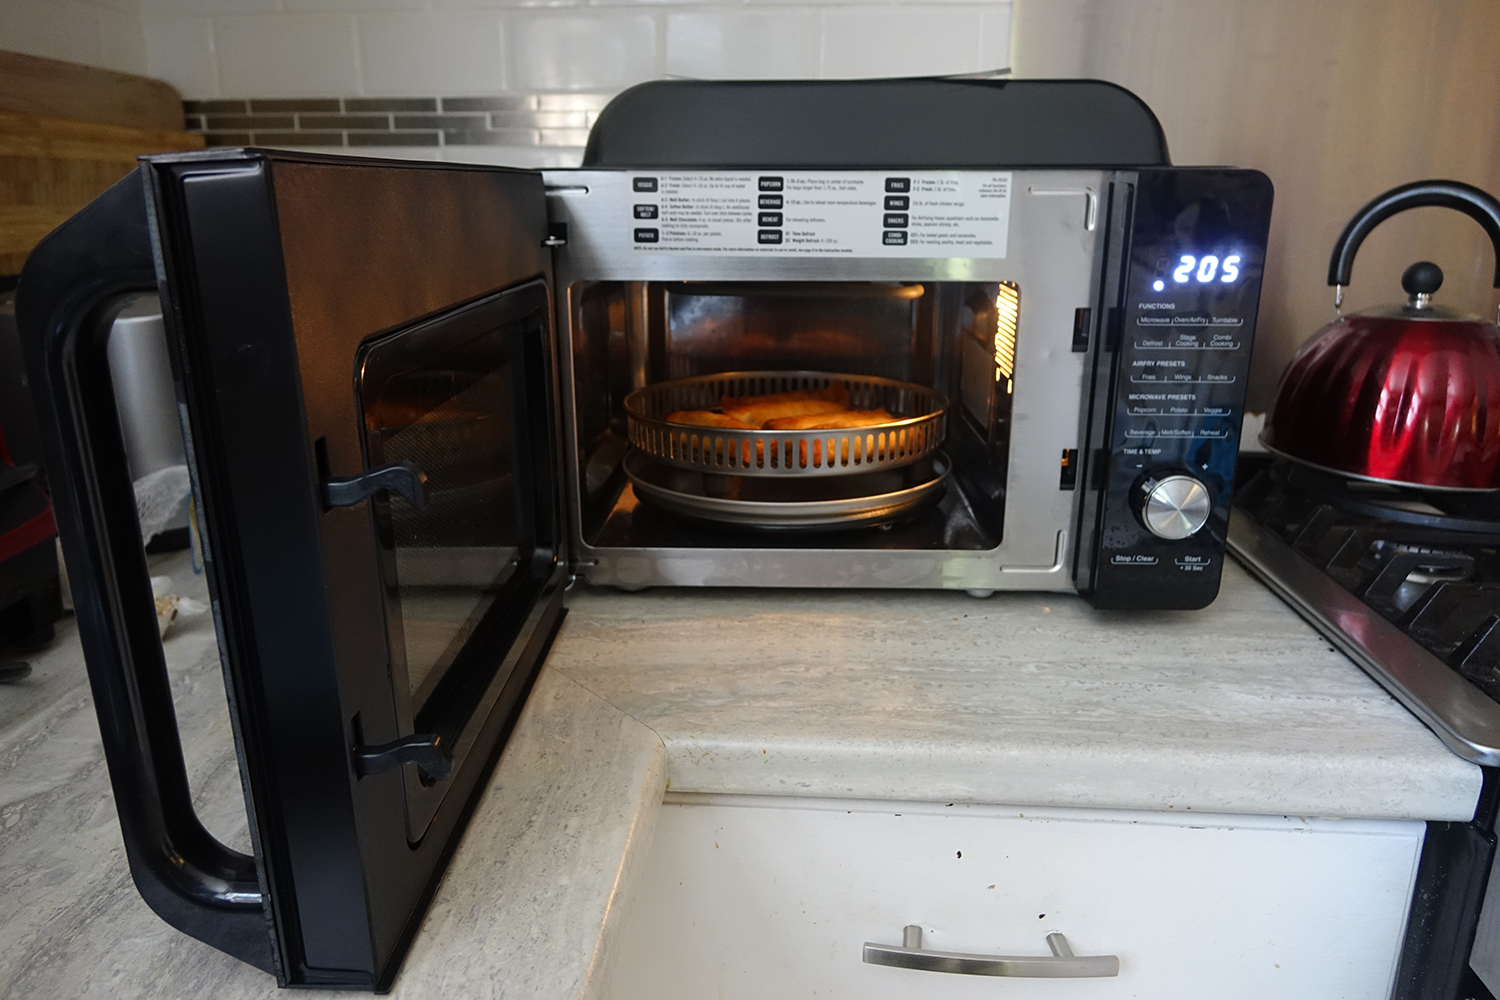 Cuisinart 3-in-1 microwave oven door open